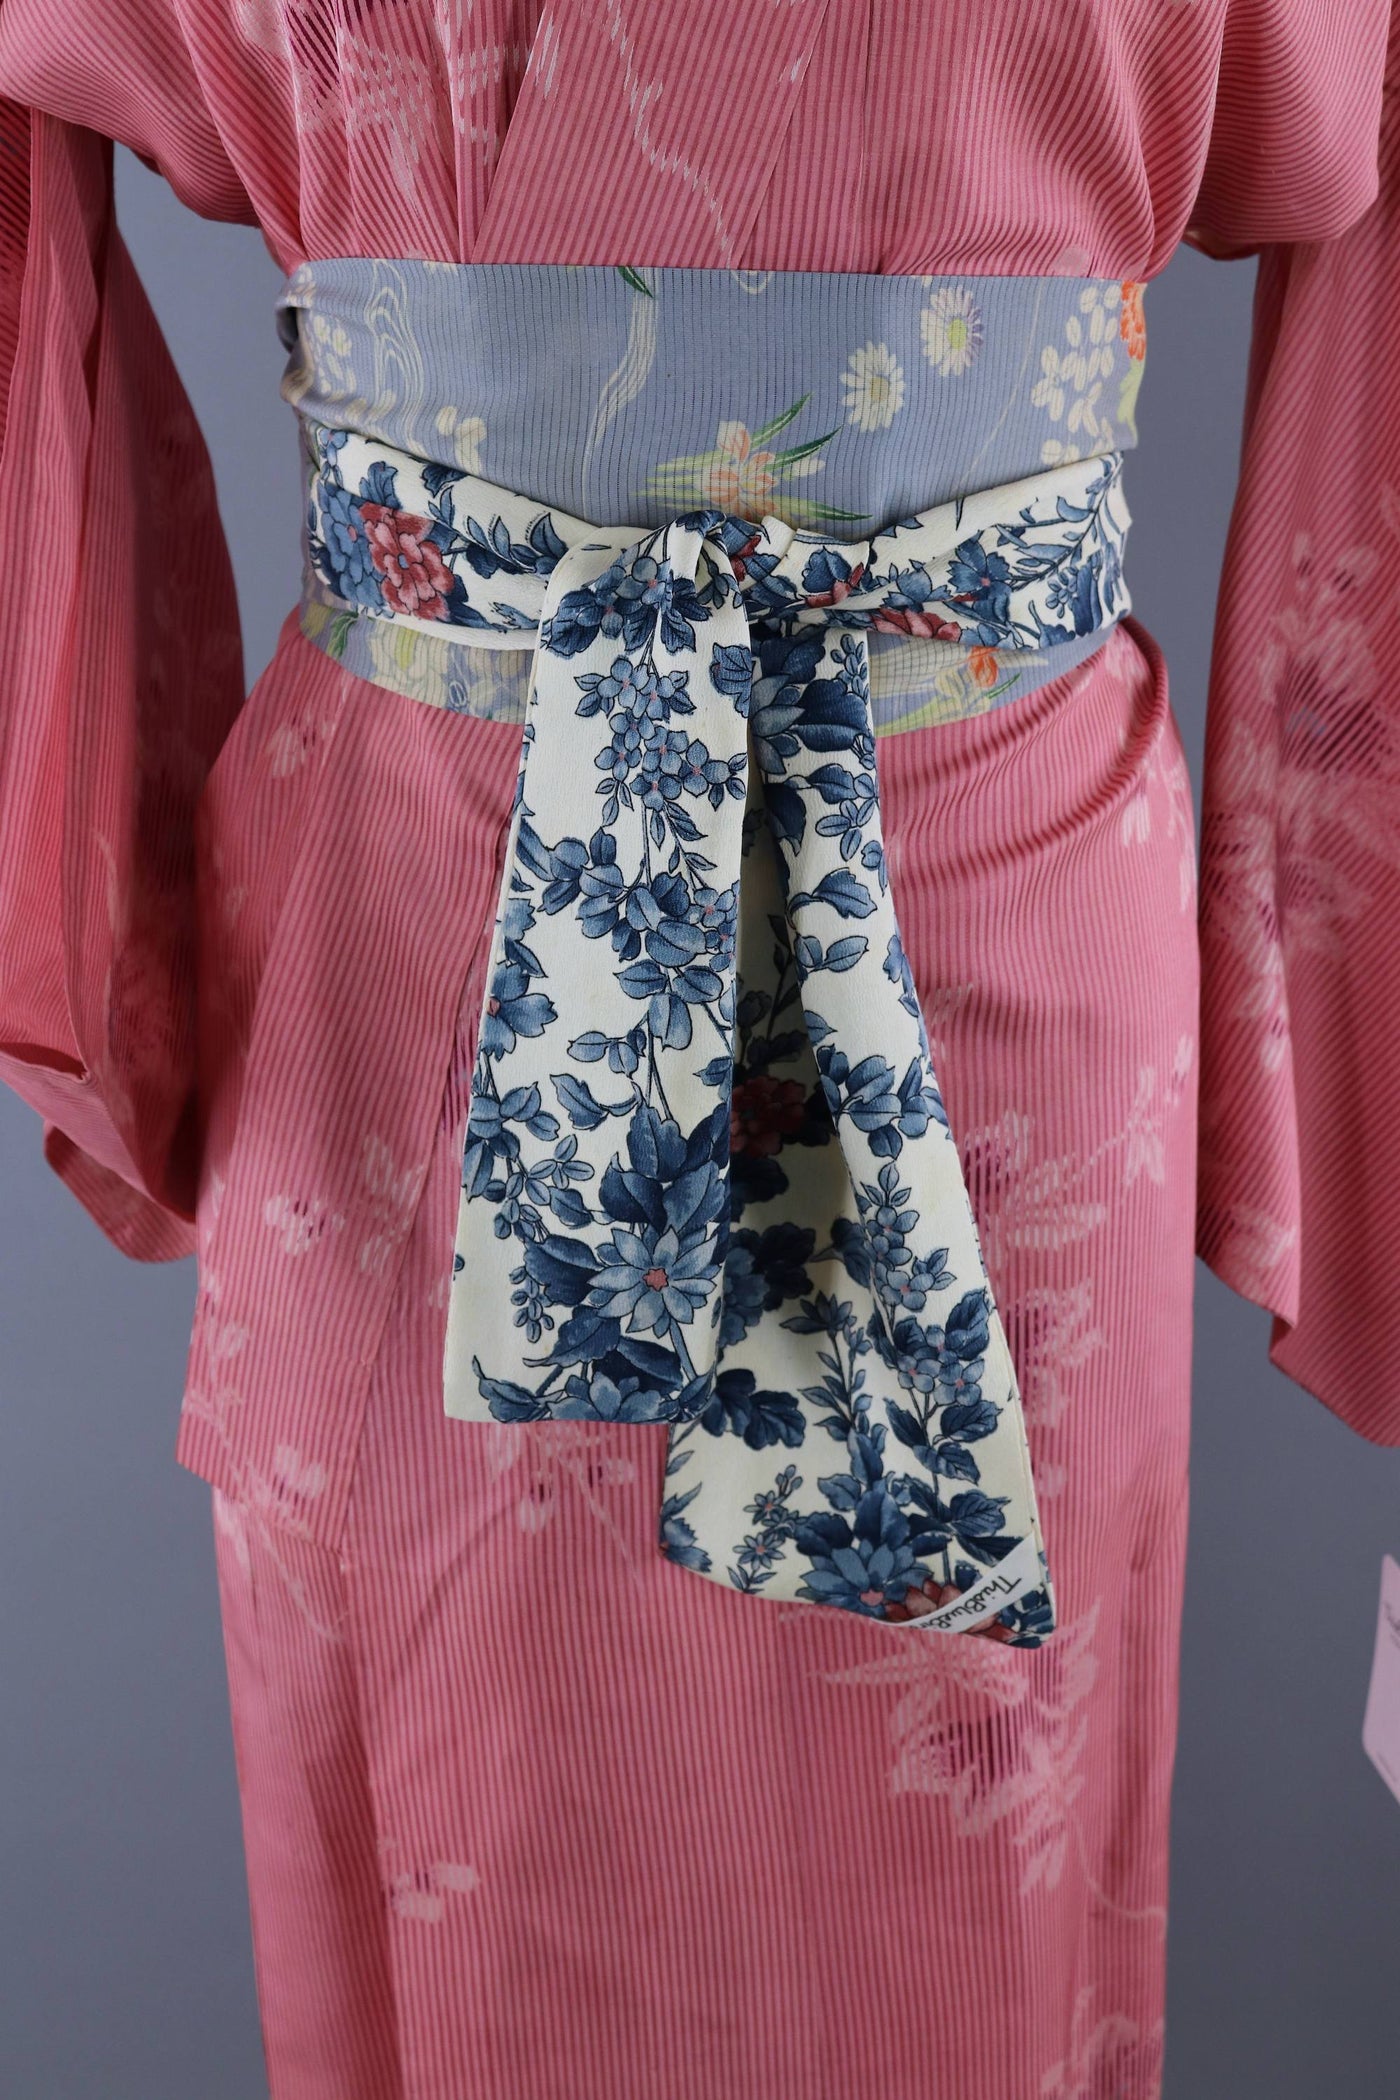 Vintage 1950s Silk Kimono Robe / Pink Stripes Floral - ThisBlueBird